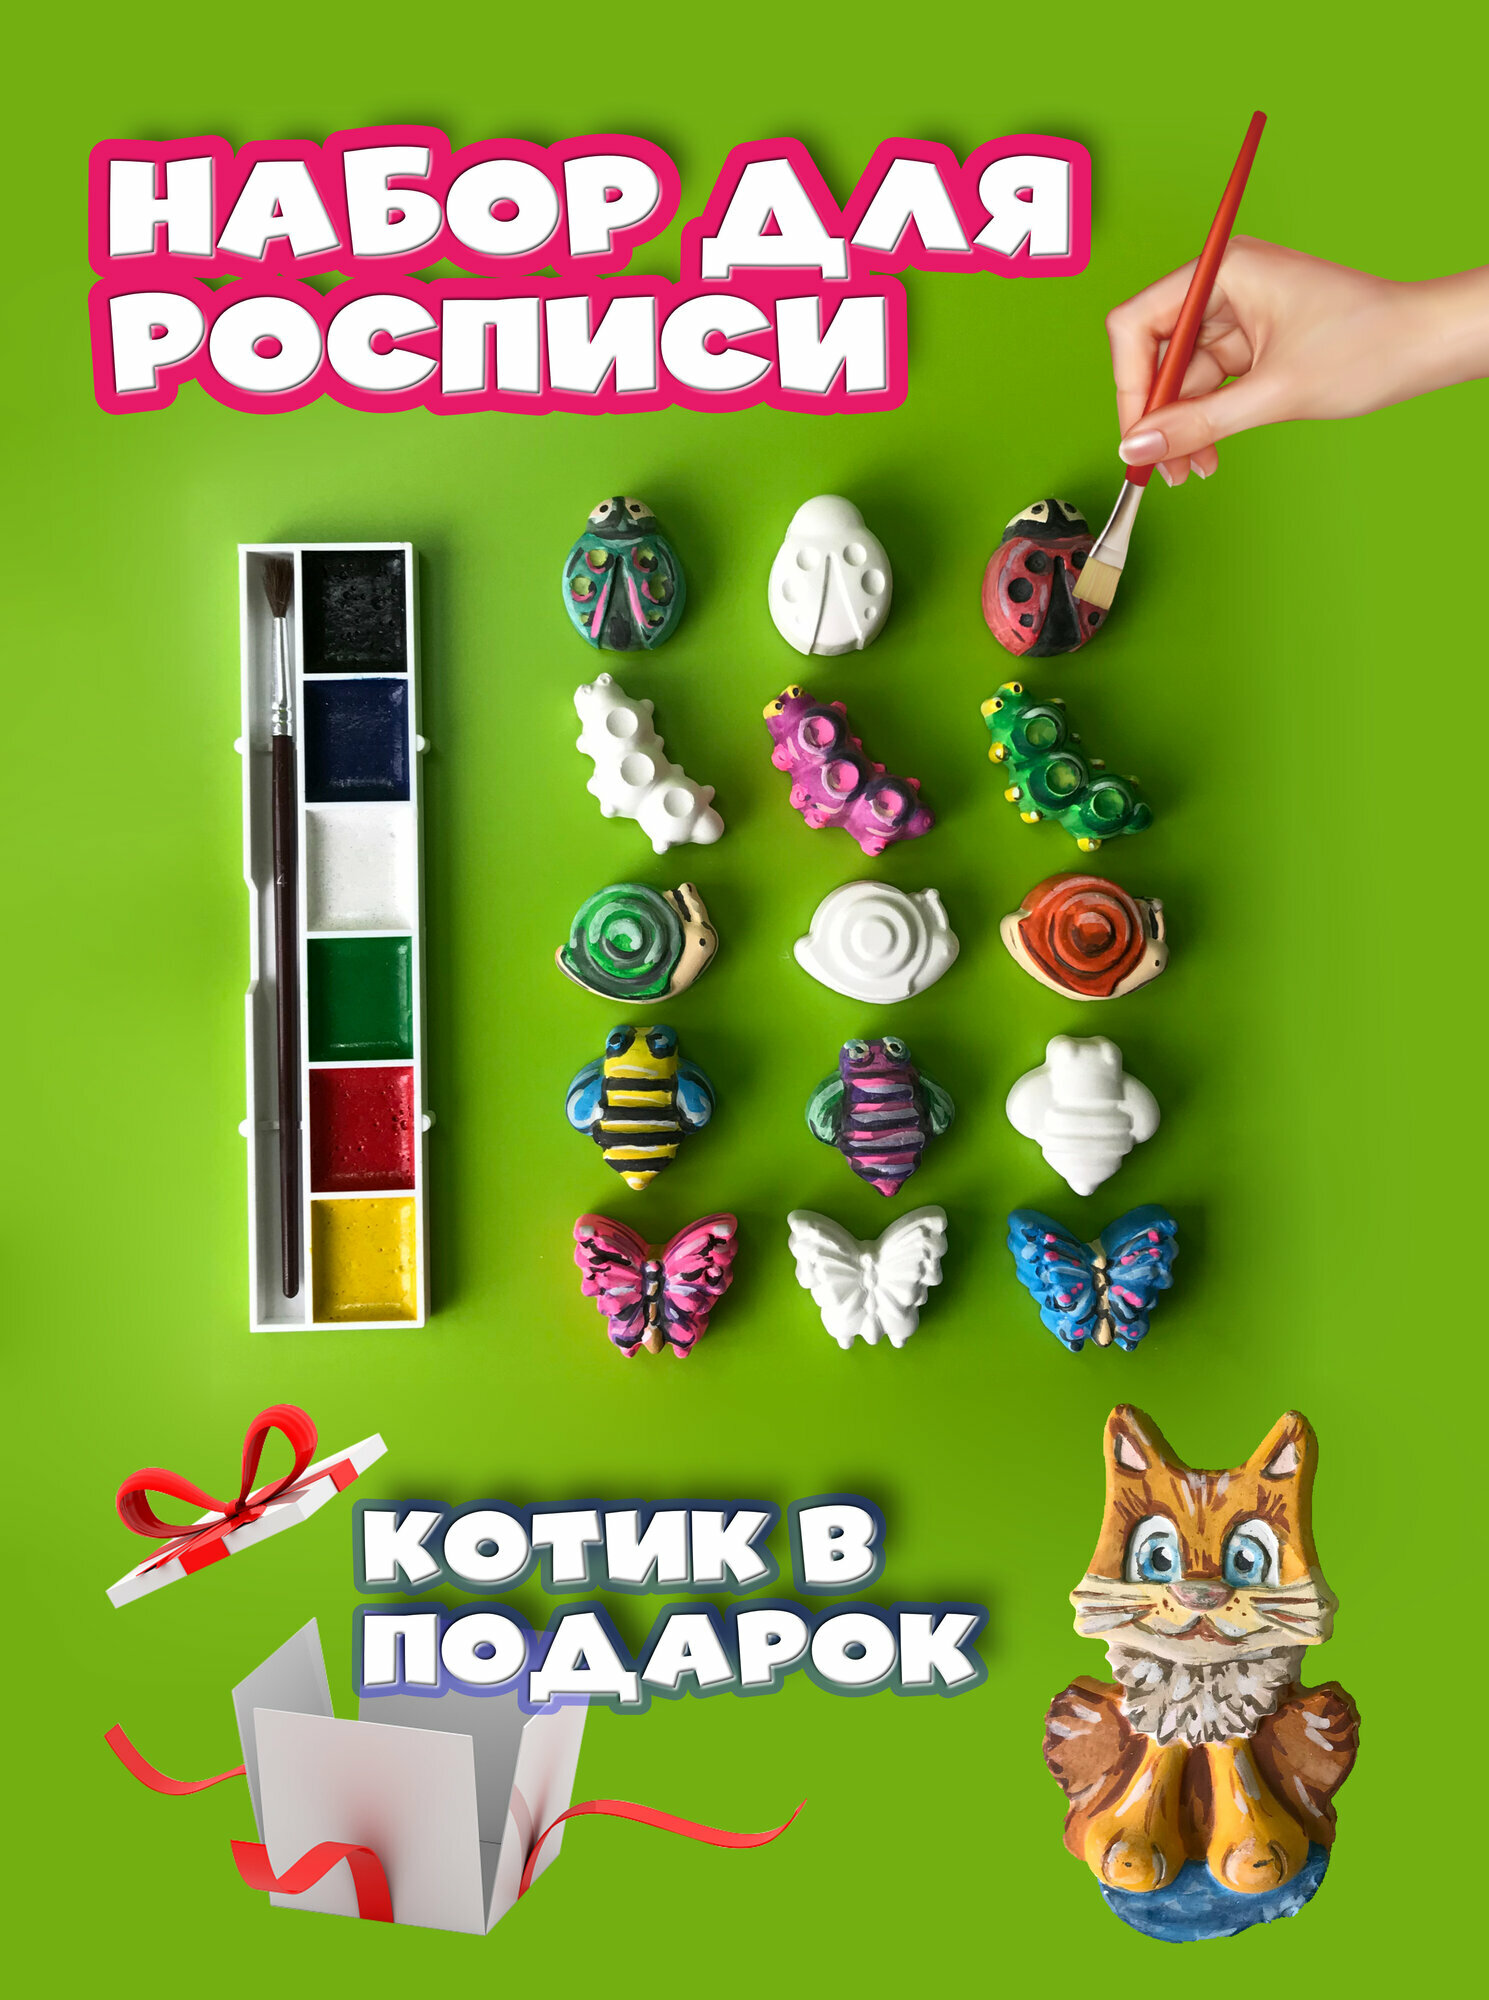 Набор гипсовых фигурок для раскрашивания насекомые + котик в подарок. Набор 16 фигурок, акварельные краски 6 цветов и кисточка.